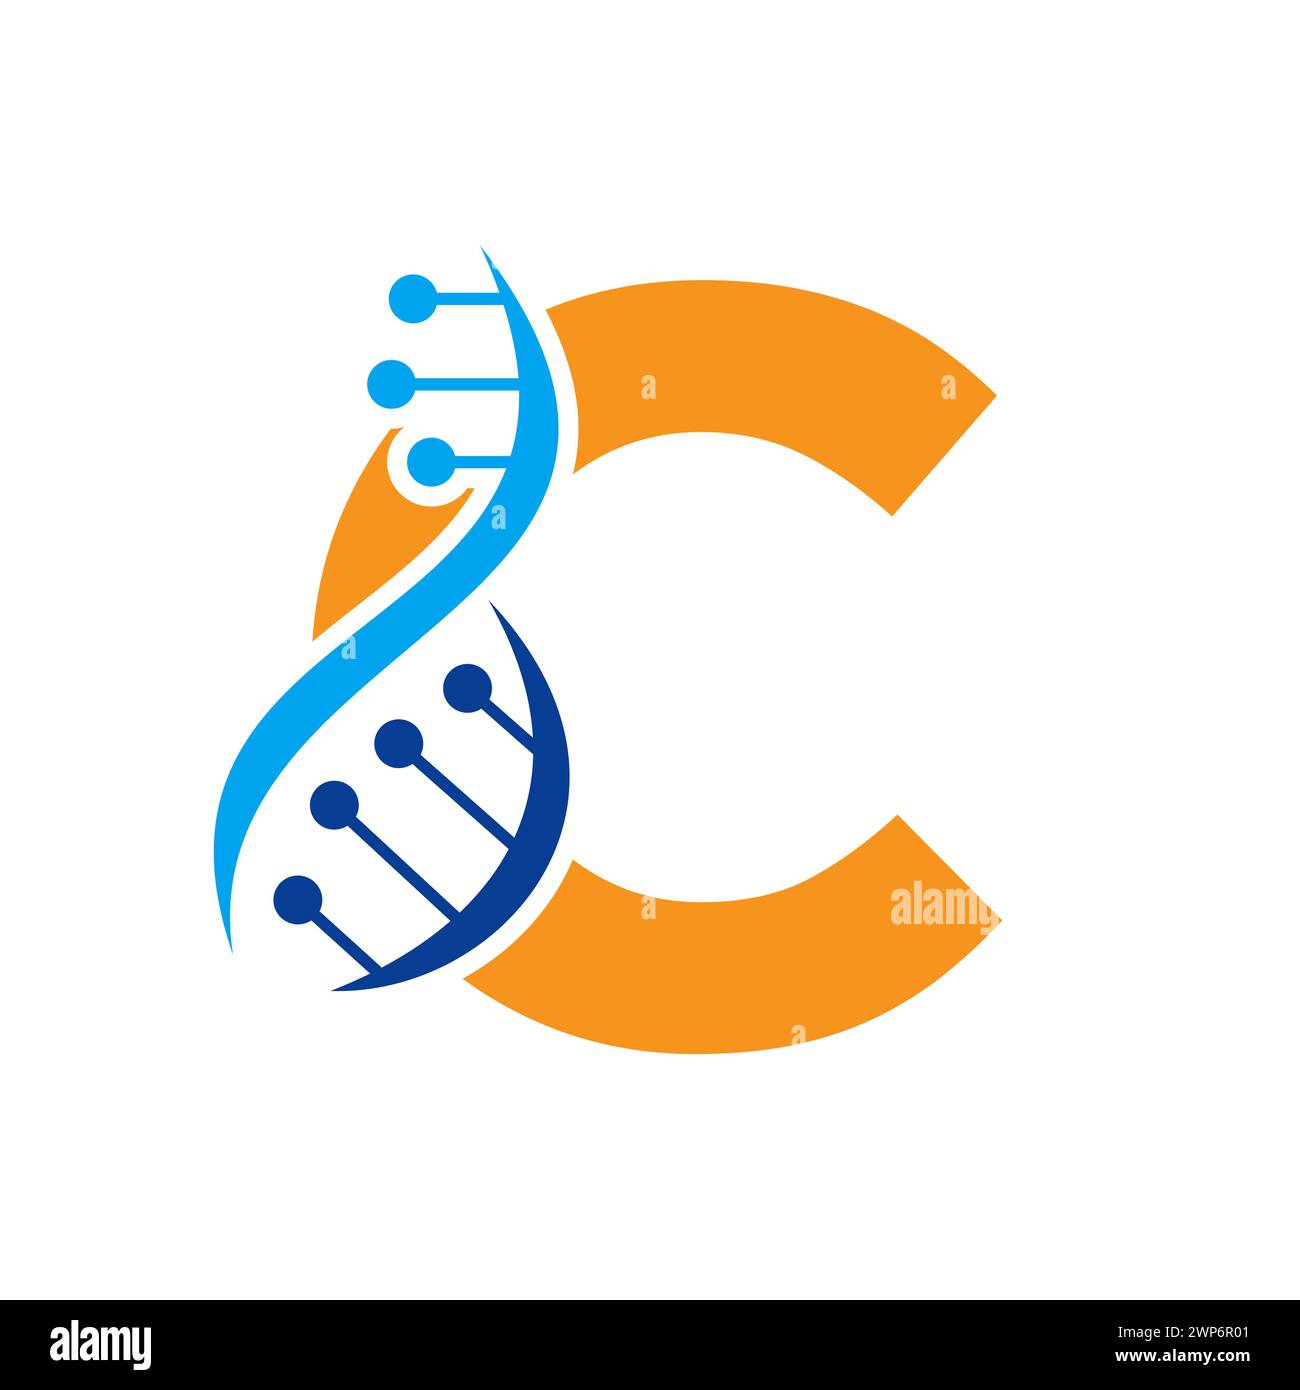 Ursprüngliches DNA-Logo auf Buchstabe C Vektorvorlage für Gesundheitssymbol Stock Vektor